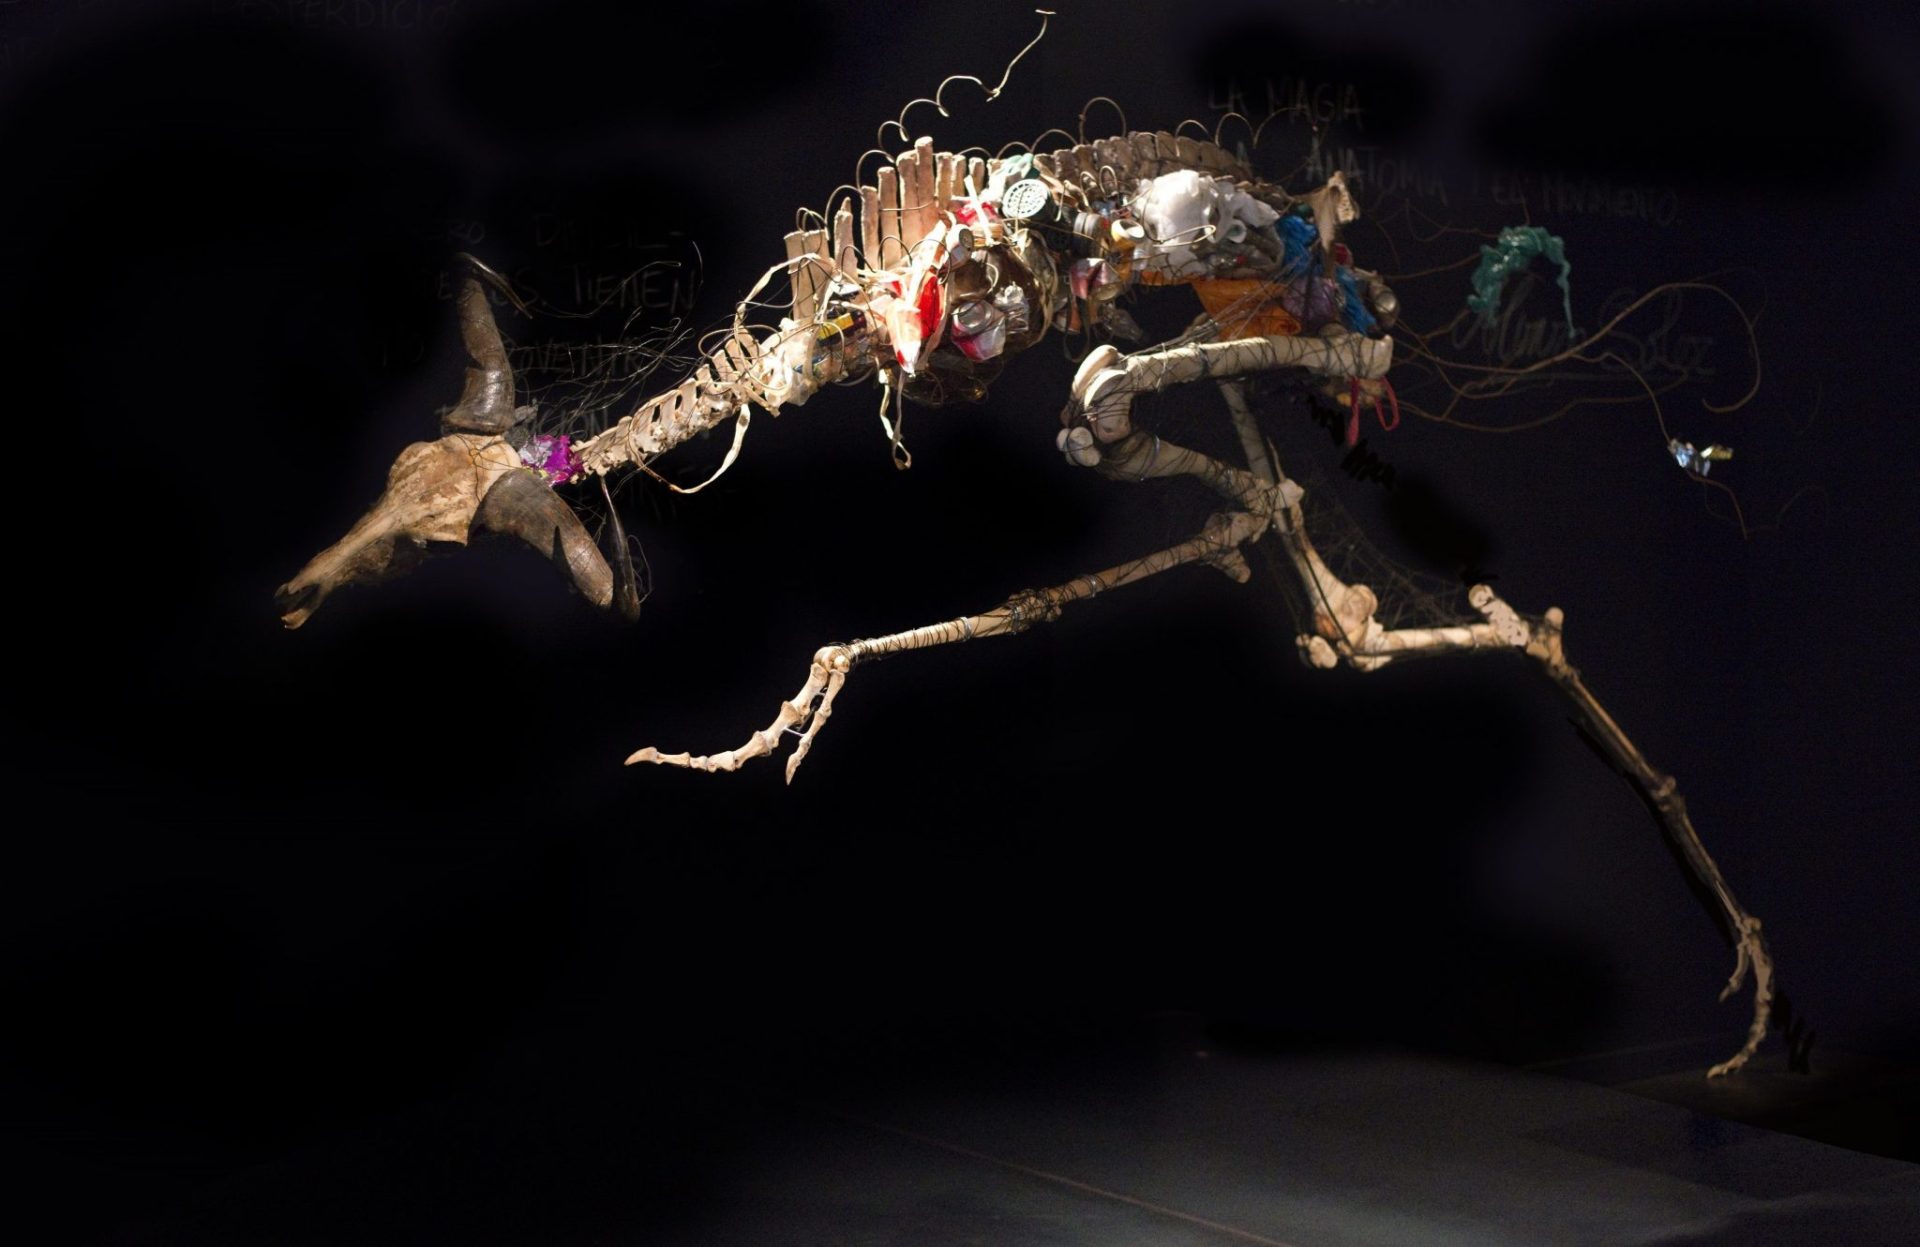 Fauno (2014) Ser que mide 4m x 2,7m. Con un cráneo de ñú, cuello con vértebras de cerdo, tronco de caballo, patas de vaca y avestruz, alambre, basura y pedestal. © Carlos Bellvehí